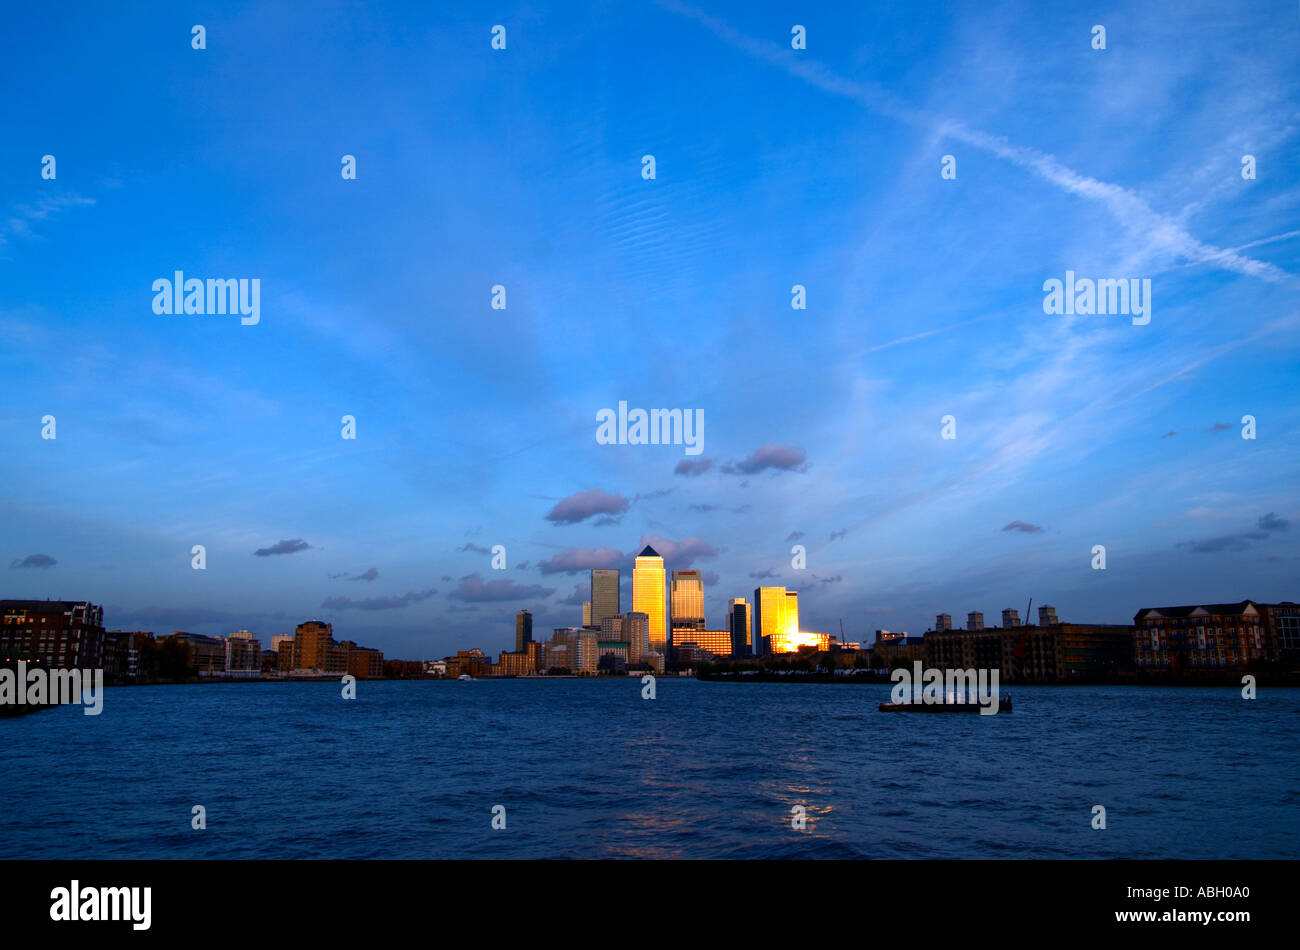 Canary Wharf Docklands Londres paysage urbain horizon coucher de soleil crépuscule profil bleu ciel tamise angleterre Grande-bretagne uk vue design Banque D'Images